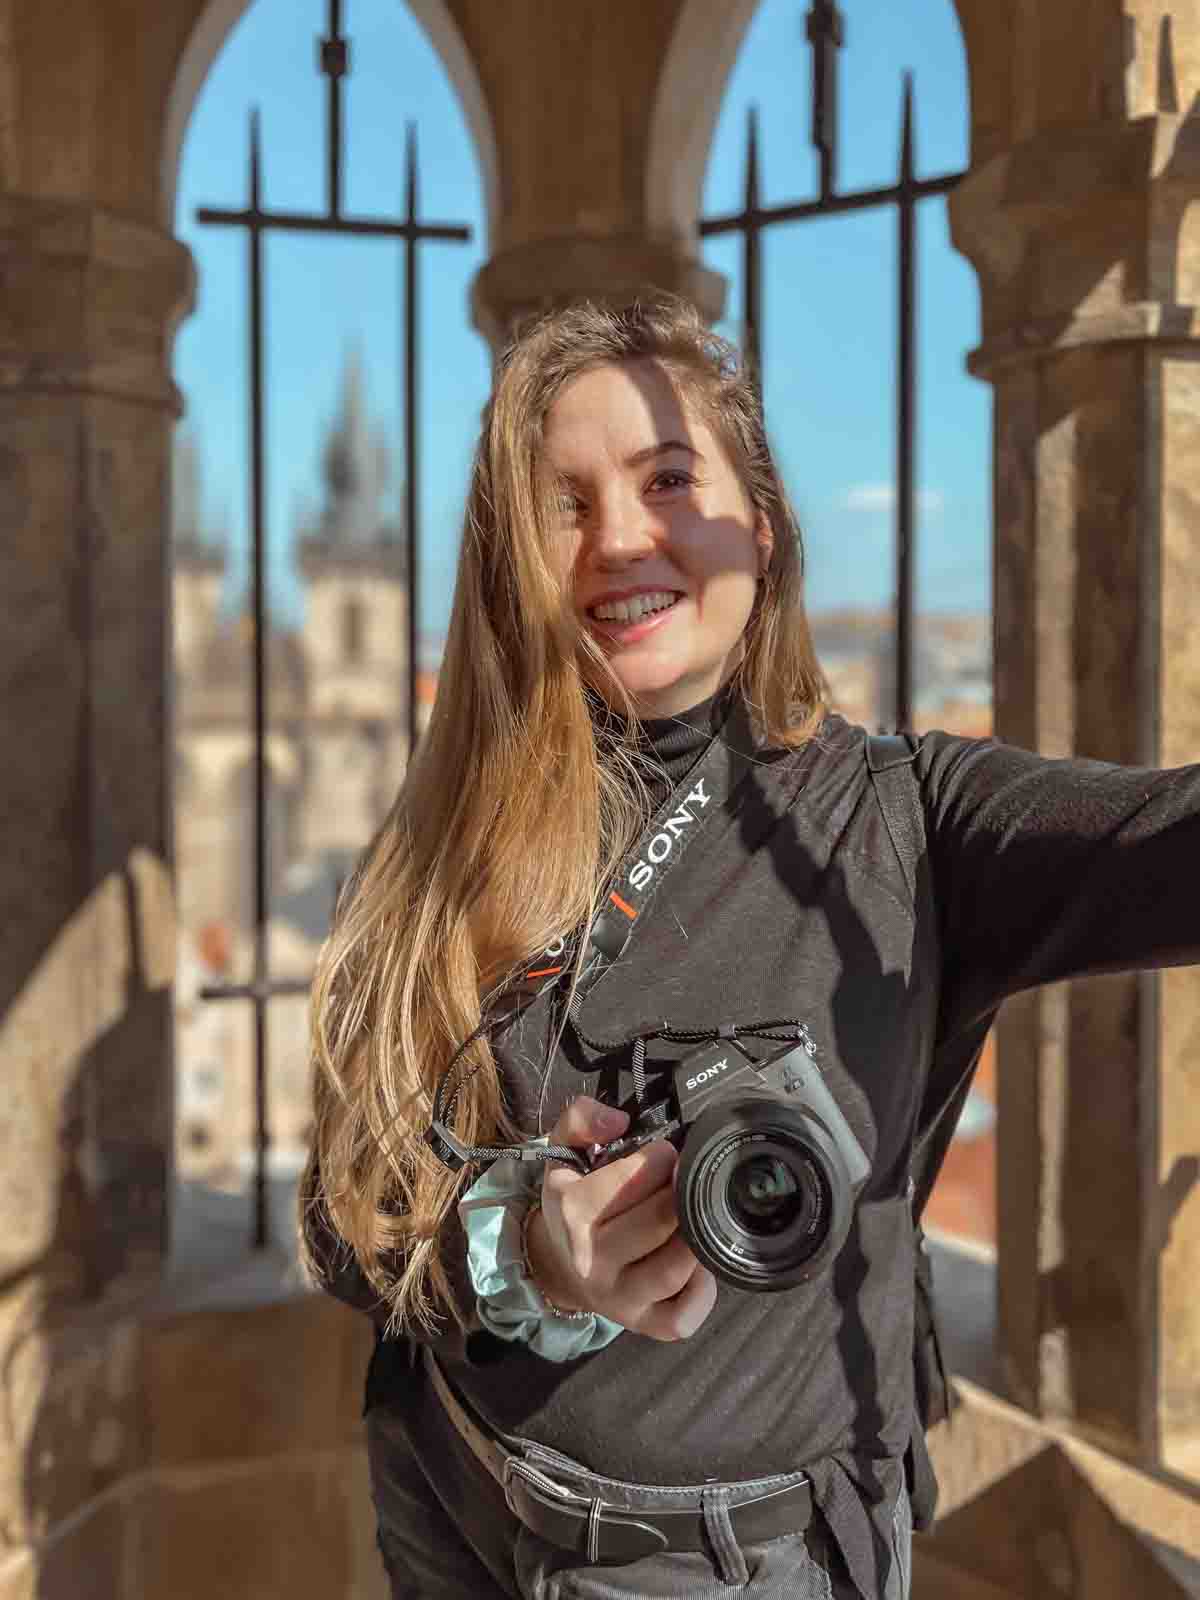 foto di ragazza con capelli lunghi biondi e in mano una macchina fotografica per la home page del blog di viaggi e reportage quandoarriviscrivi